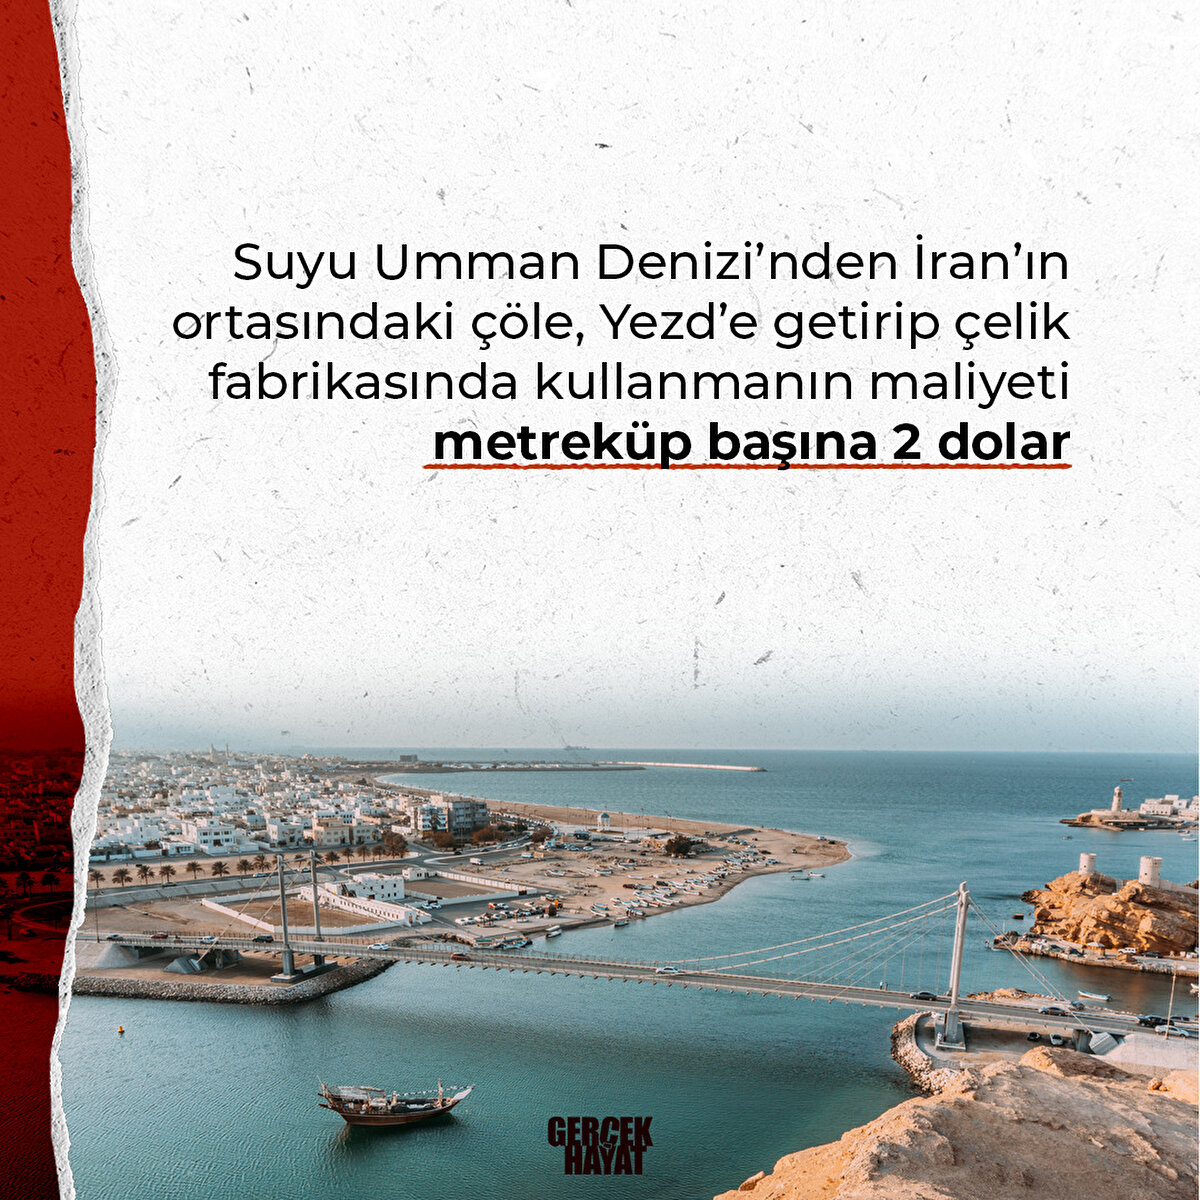 Suyu Umman Denizi'nden getirip kullanmak çok maliyetli